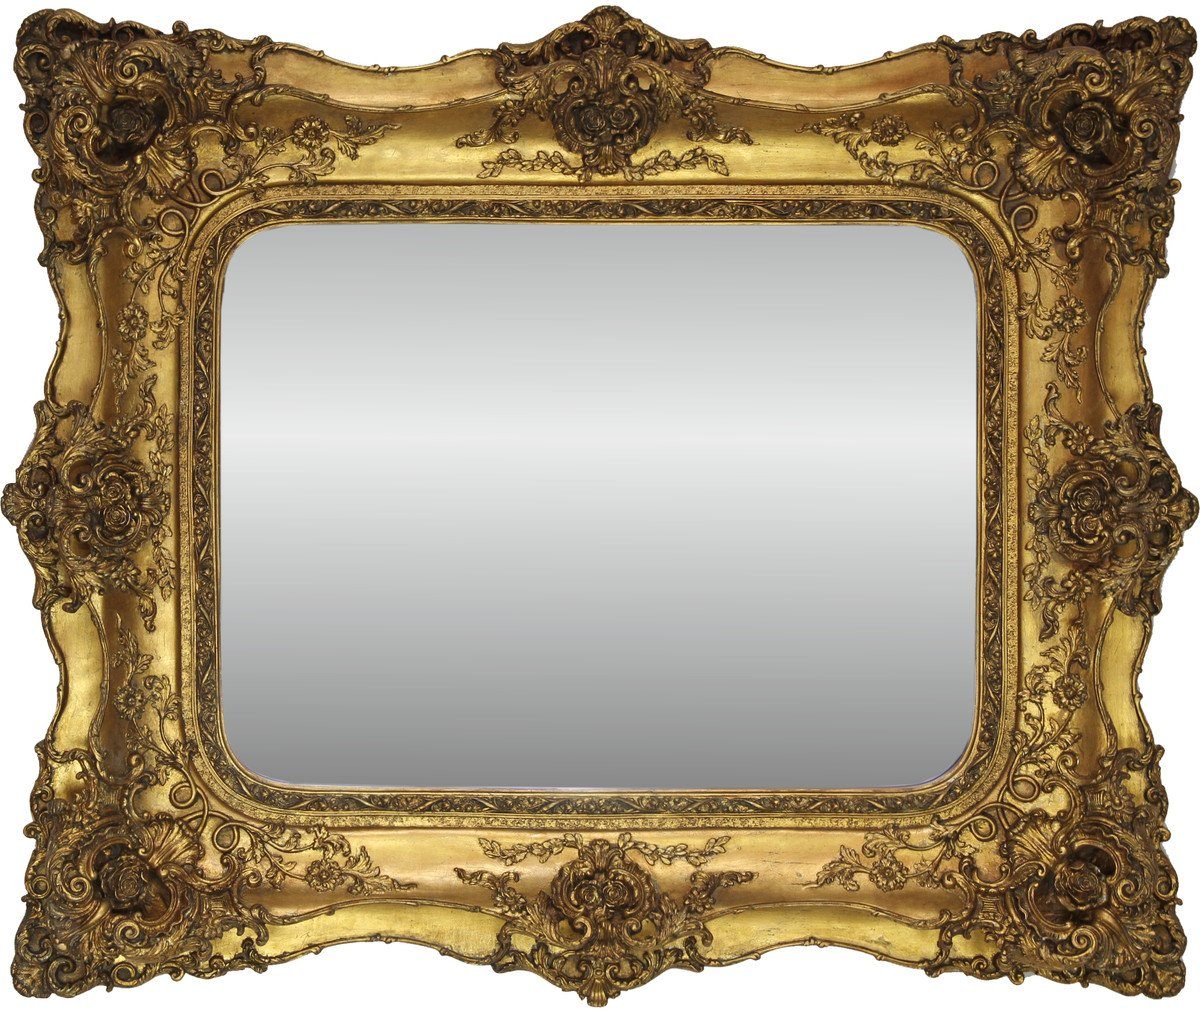 Casa Padrino Barockspiegel Barock Spiegel Gold Antik Stil mit Doppelrahmen - 120 x 105 cm - Edel & Prunkvoller Wandspiegel